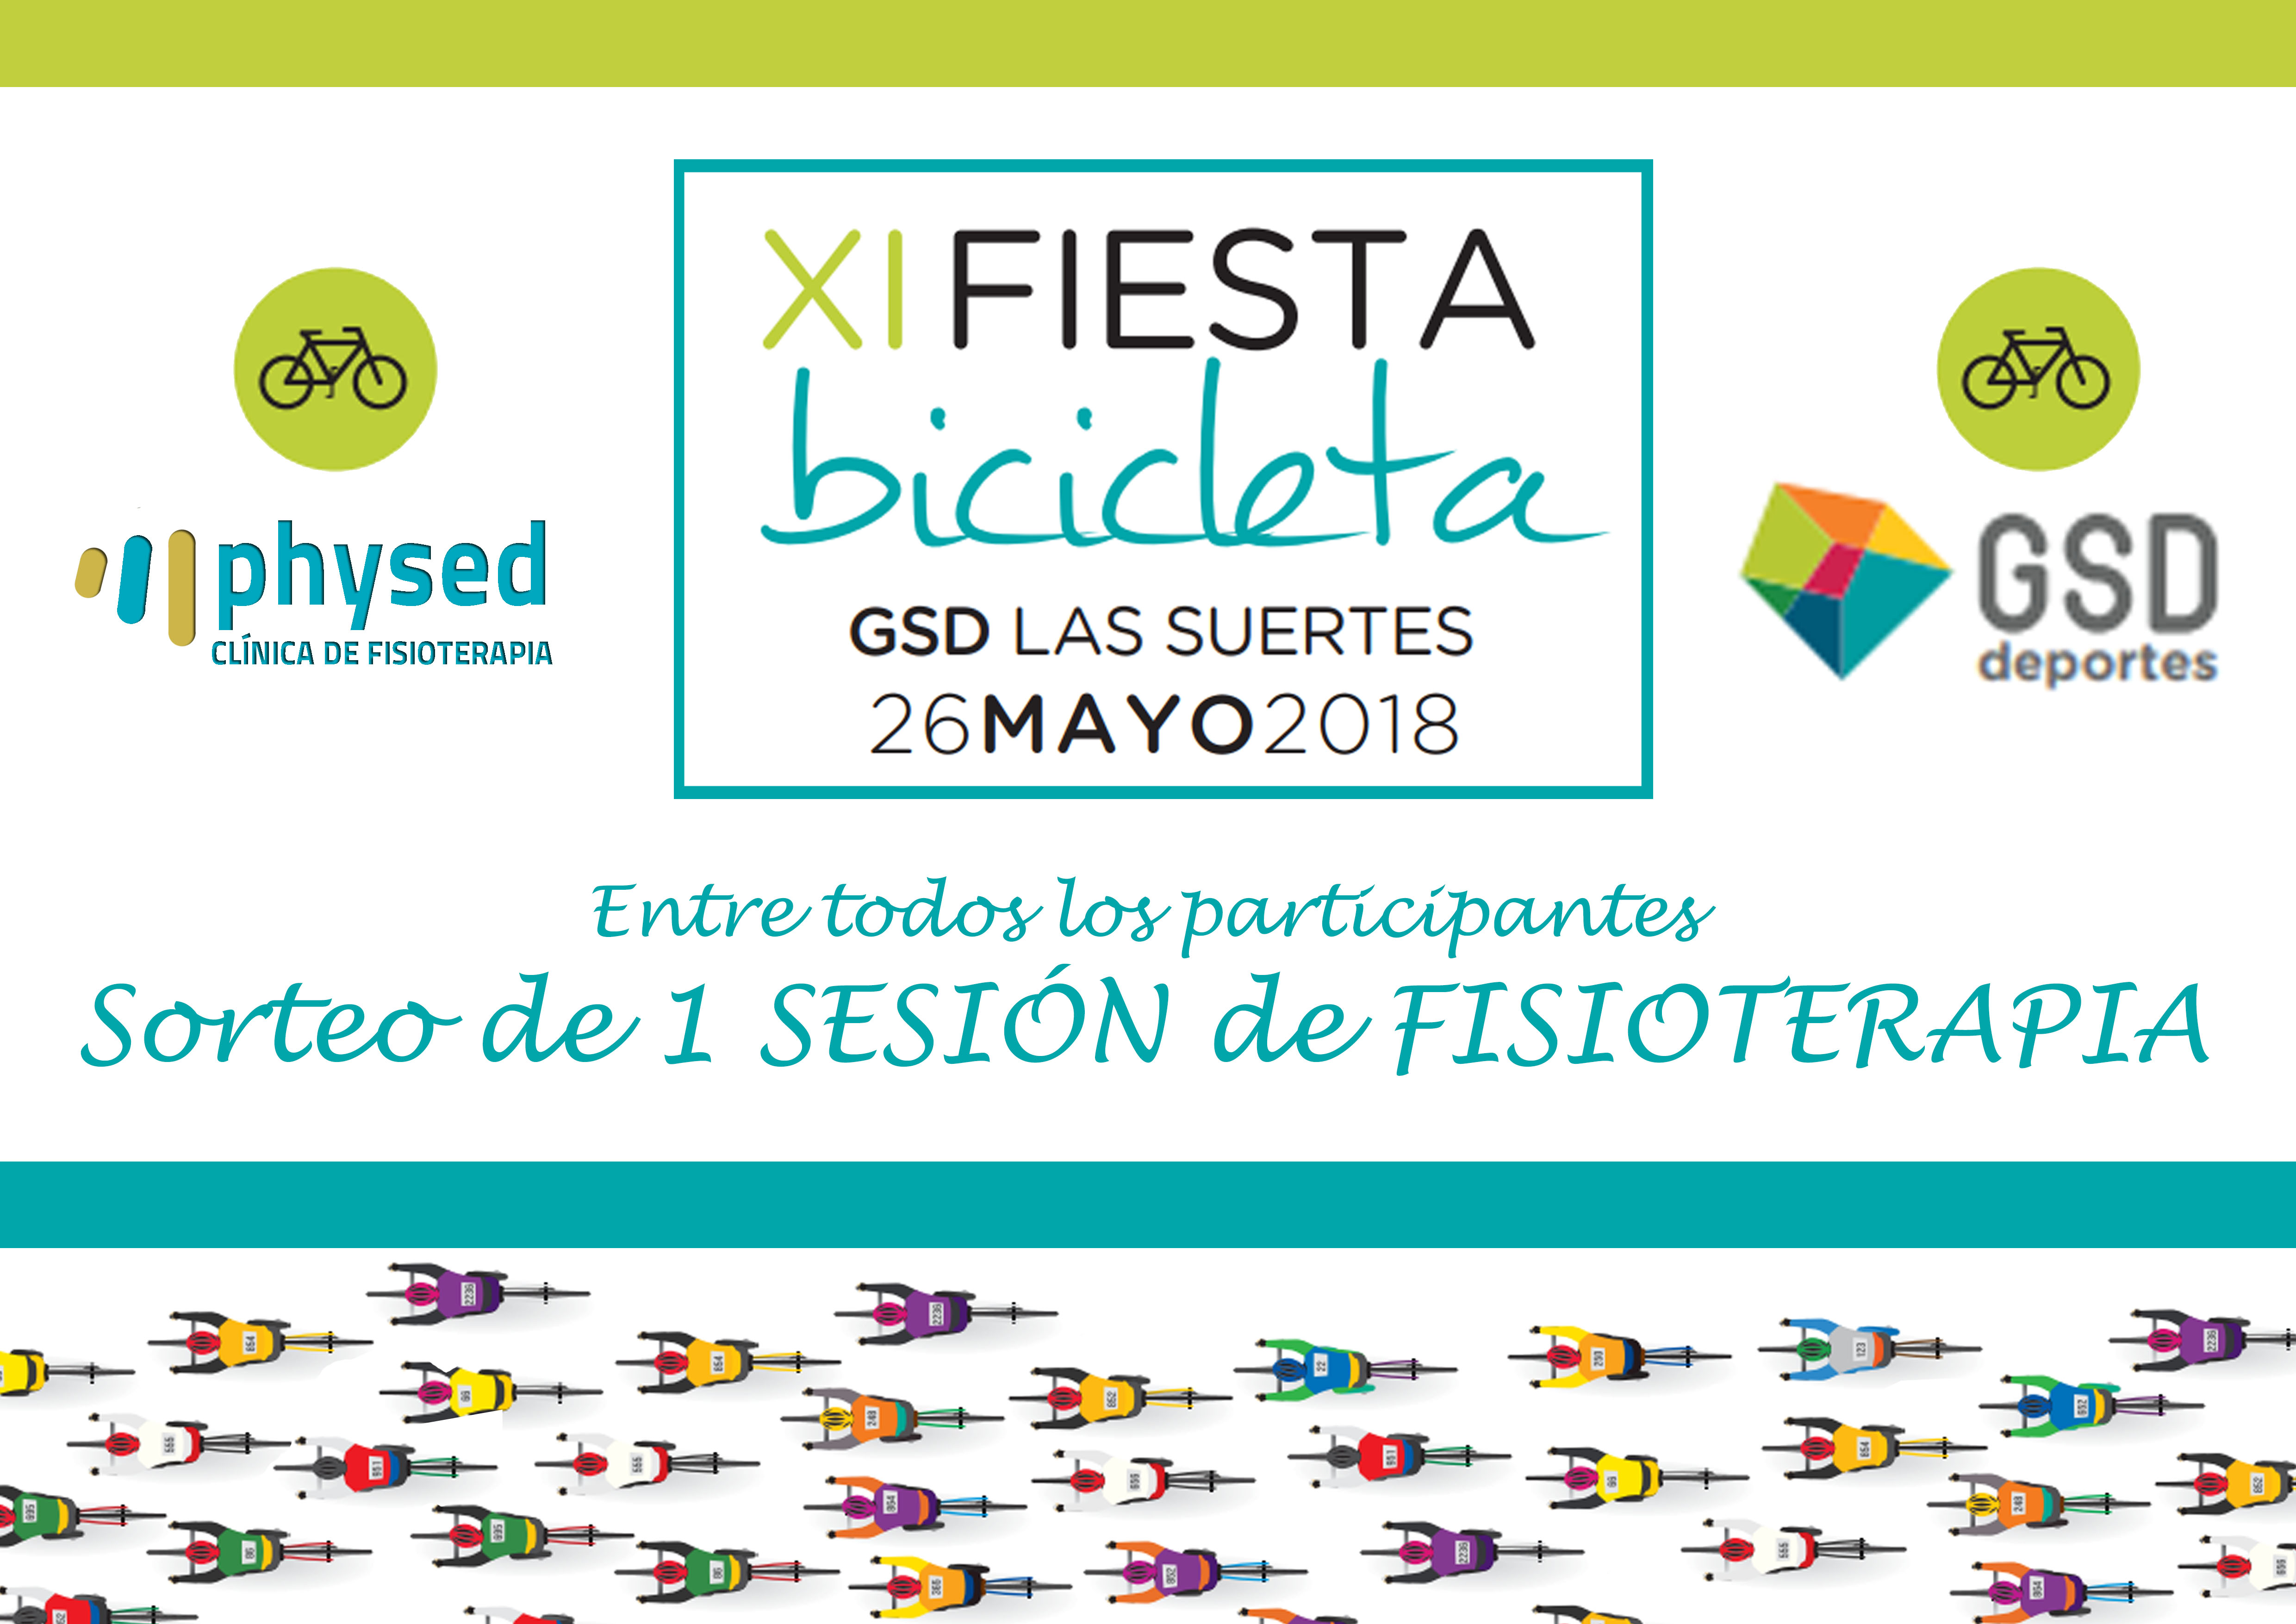 Physed en la "Fiesta de la Bicicleta GSD"